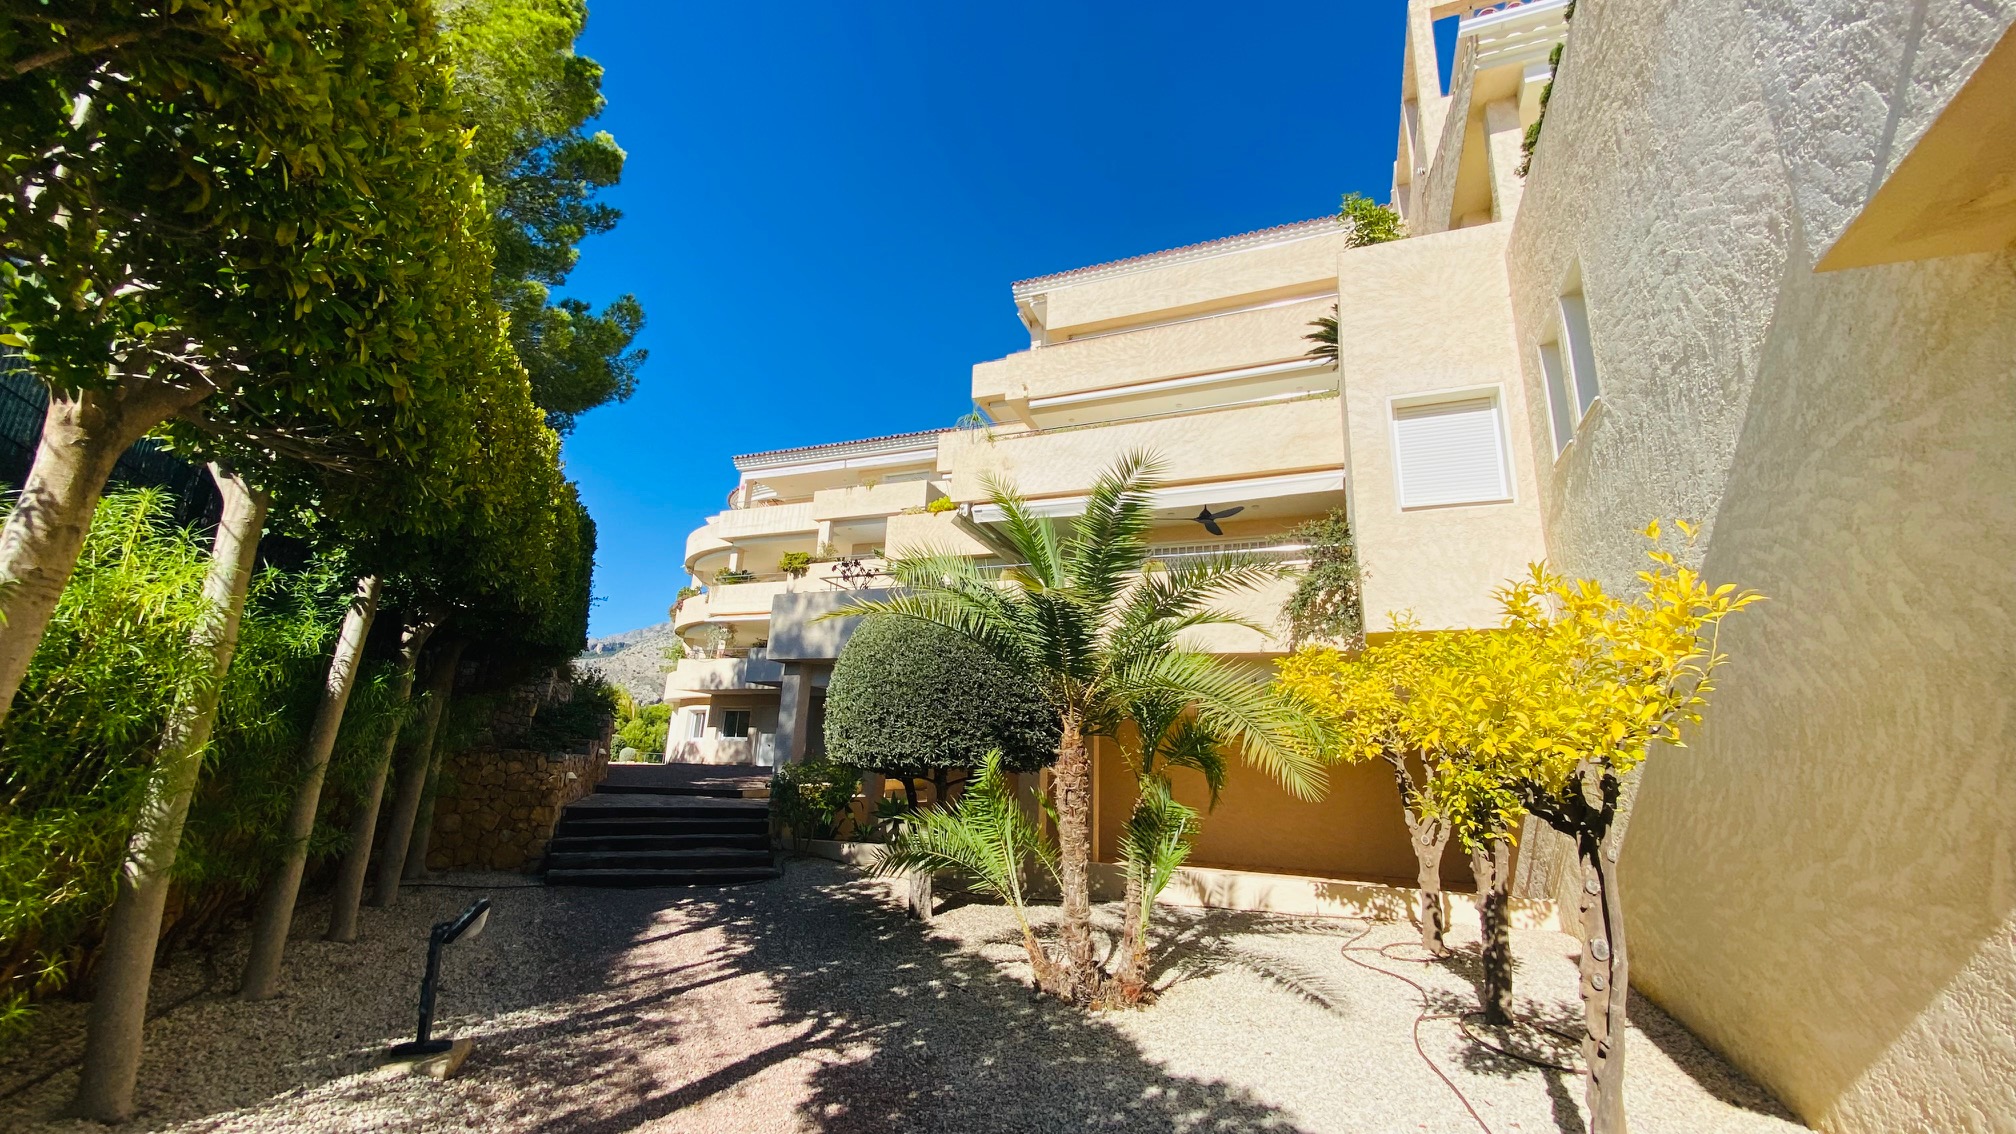 Spektakulær leilighet til salgs i Sierra de Altea: uovertruffen utsikt og uforglemmelige boarealer